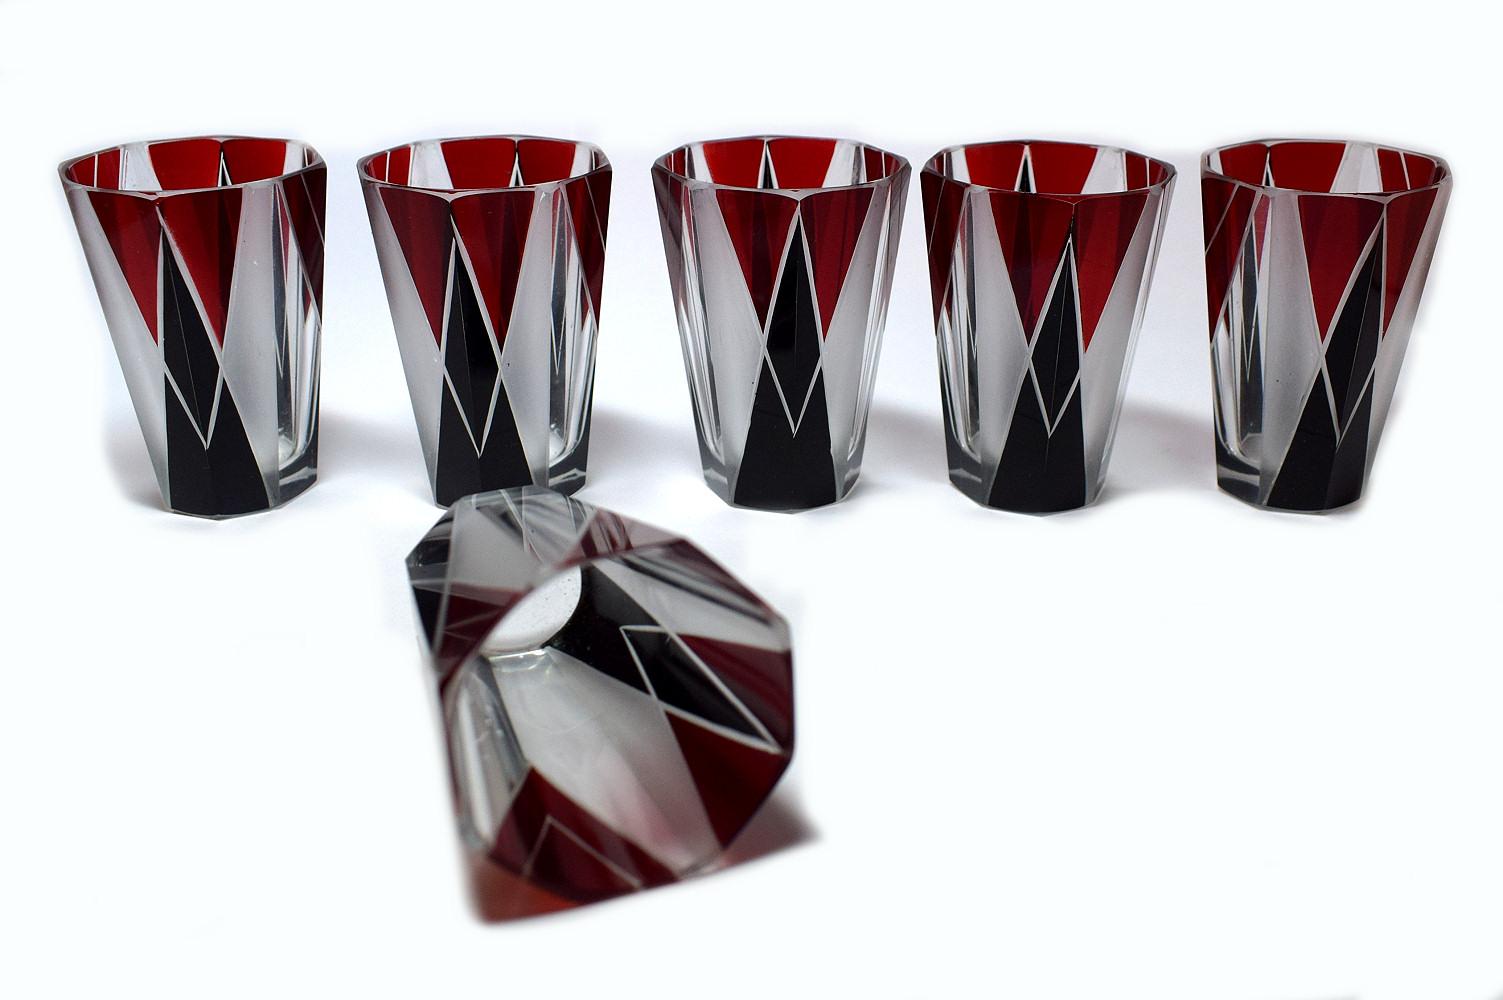 Ensemble de carafes Art Déco tchèque des années 1930 en verre transparent avec décor en émail noir et rouge profond. La carafe est accompagnée de six verres assortis, l'ensemble étant fortement émaillé de décorations géométriques. Le couvercle est